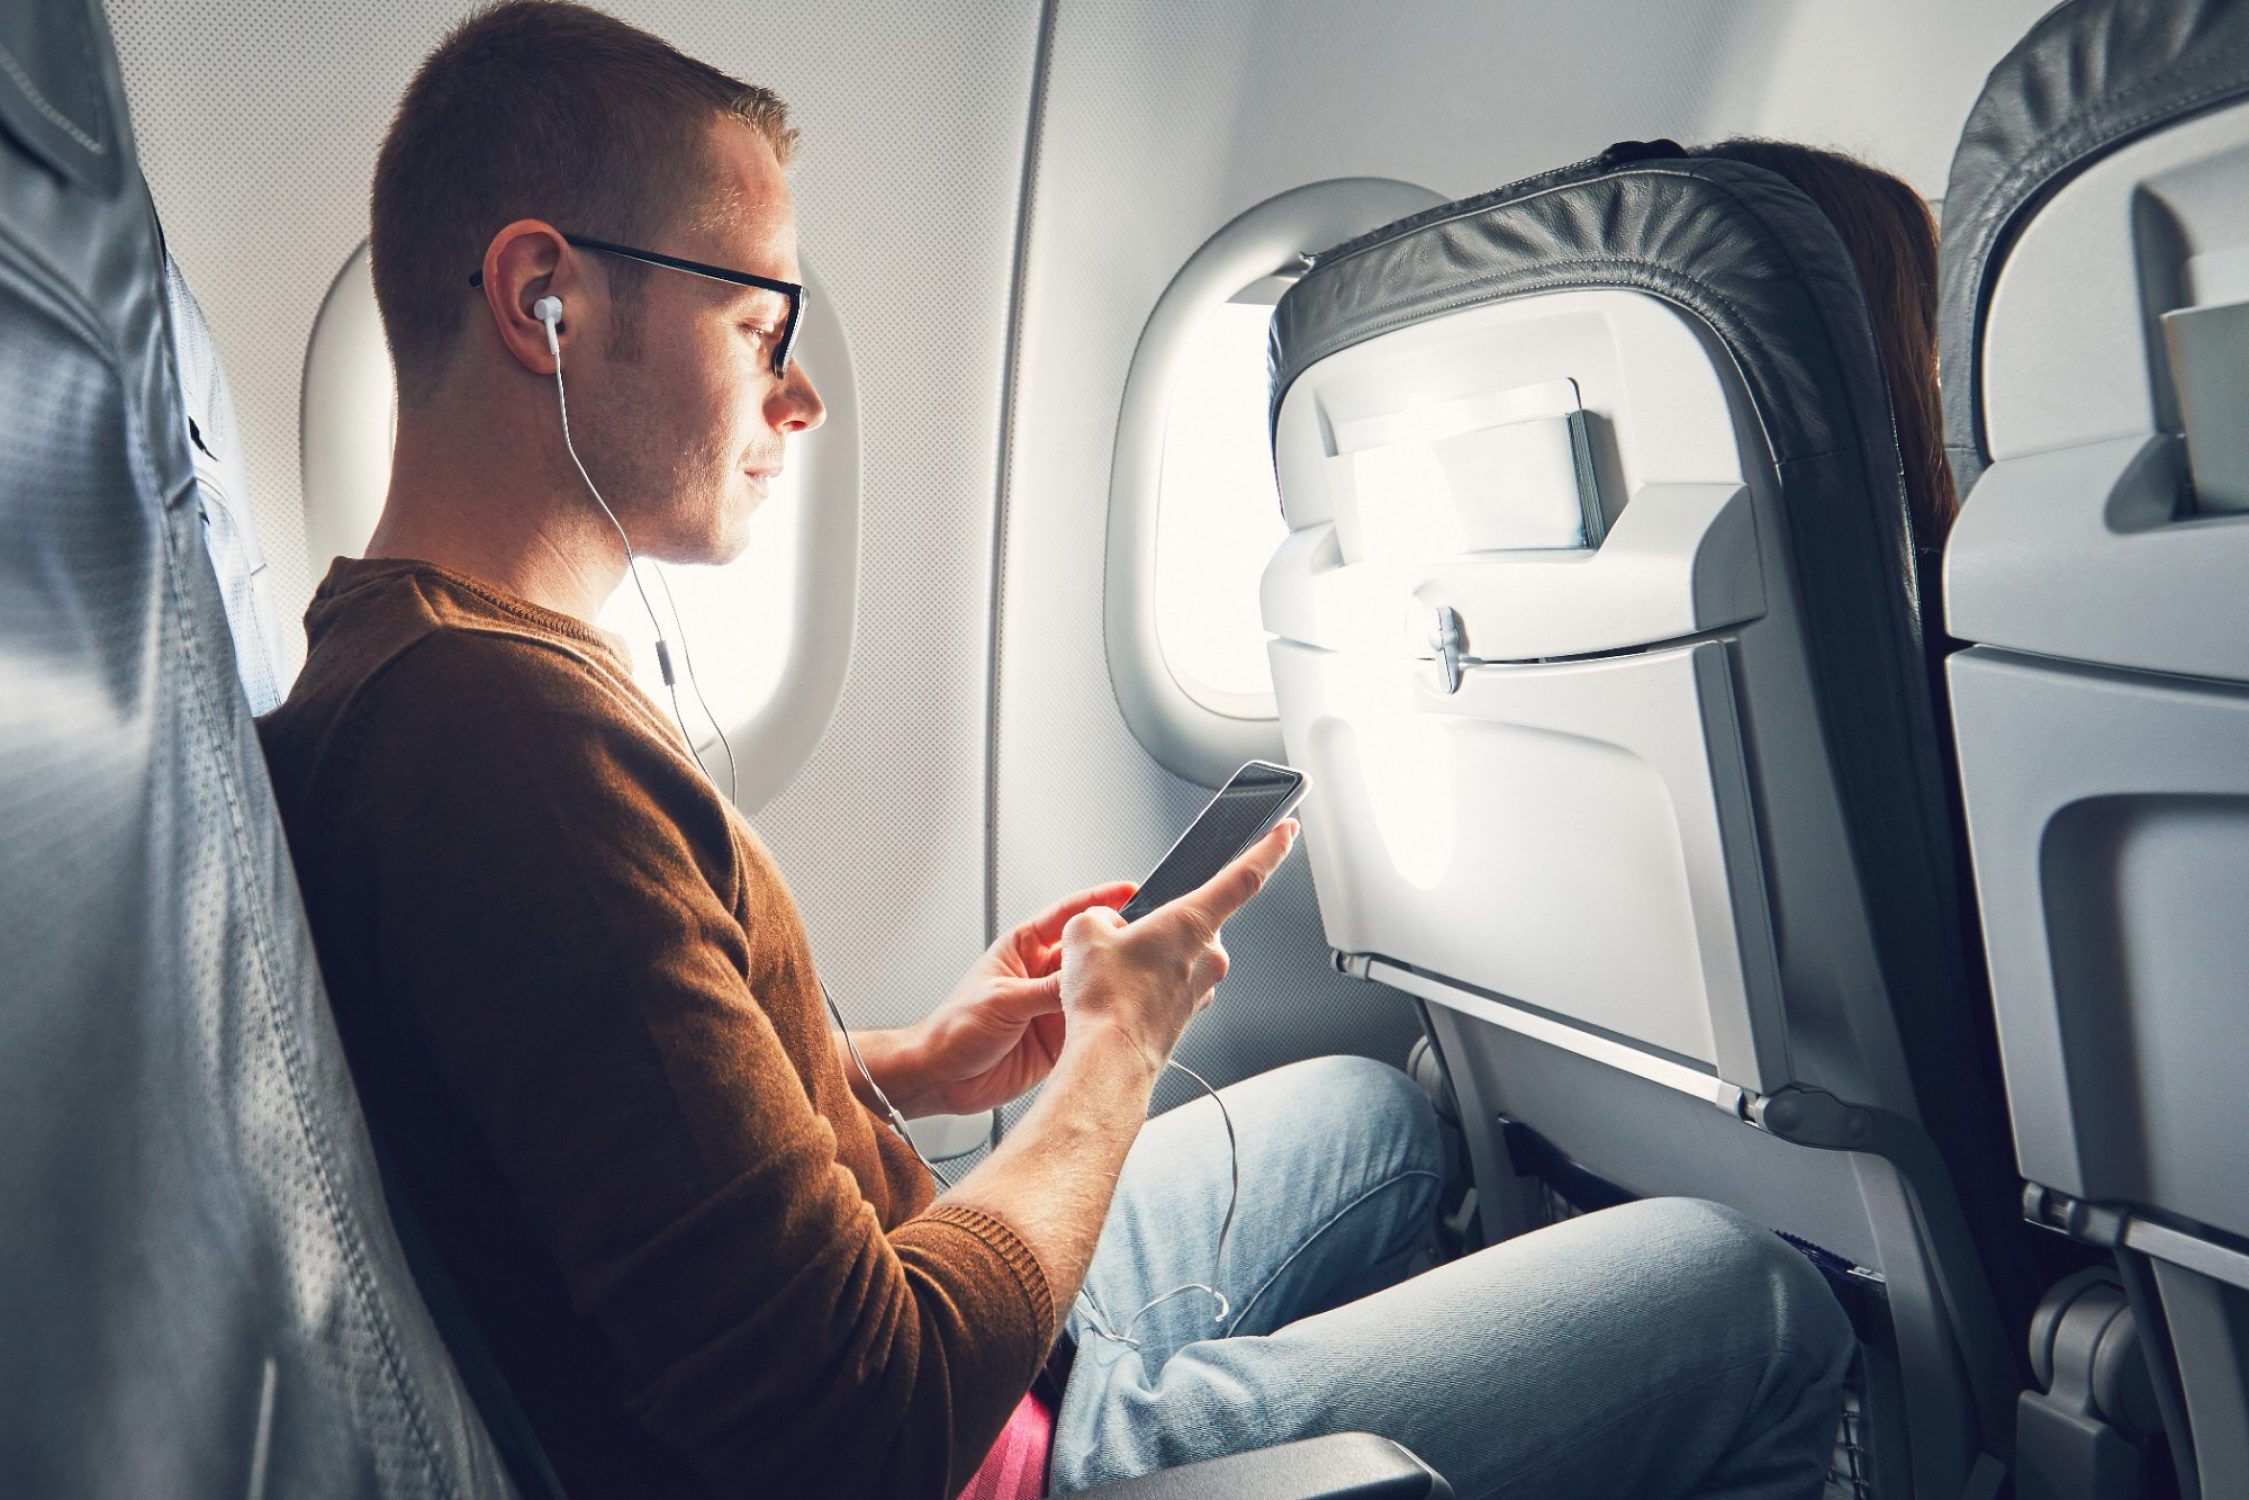 Un homme est assis dans un avion et regarde son téléphone portable.